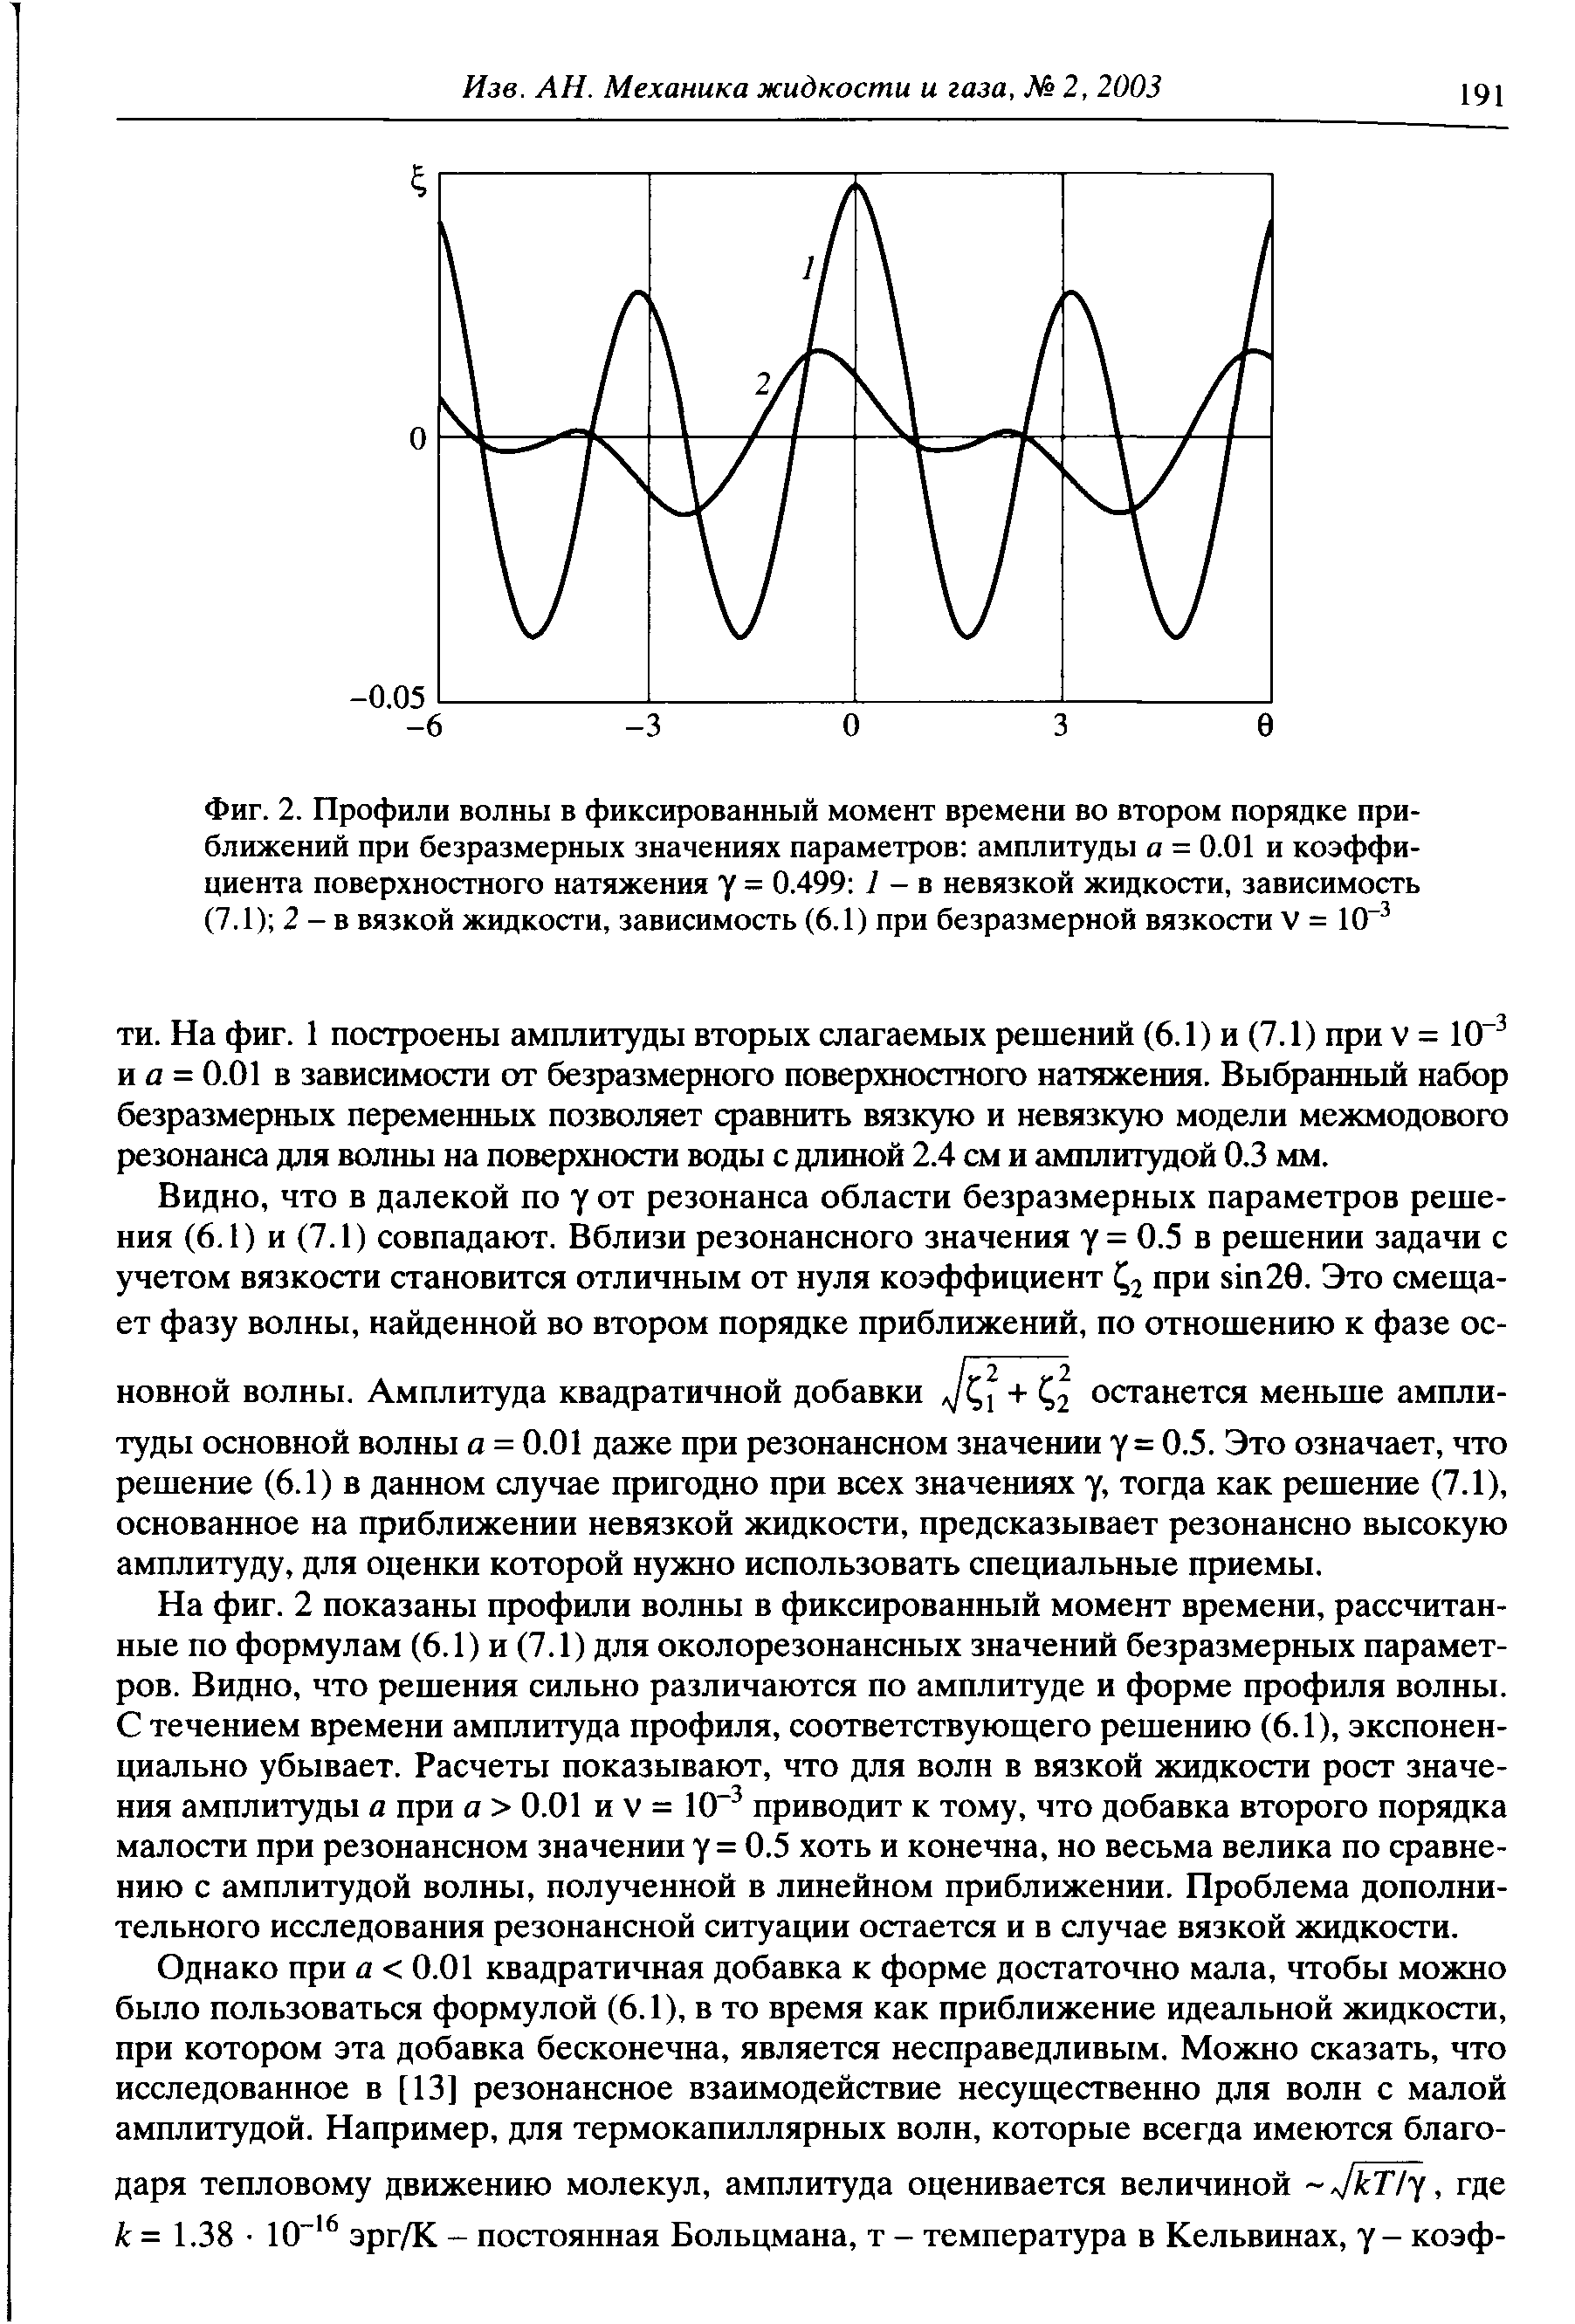 Фиг. 2. Профили волны в фиксированный момент времени во втором порядке приближений при безразмерных значениях параметров амплитуды а = 0.01 и <a href="/info/9349">коэффициента поверхностного натяжения</a> у = 0.499 7 - в <a href="/info/2459">невязкой жидкости</a>, зависимость (7.1) 2 - в <a href="/info/21685">вязкой жидкости</a>, зависимость (6.1) при безразмерной вязкости V = 10" 
